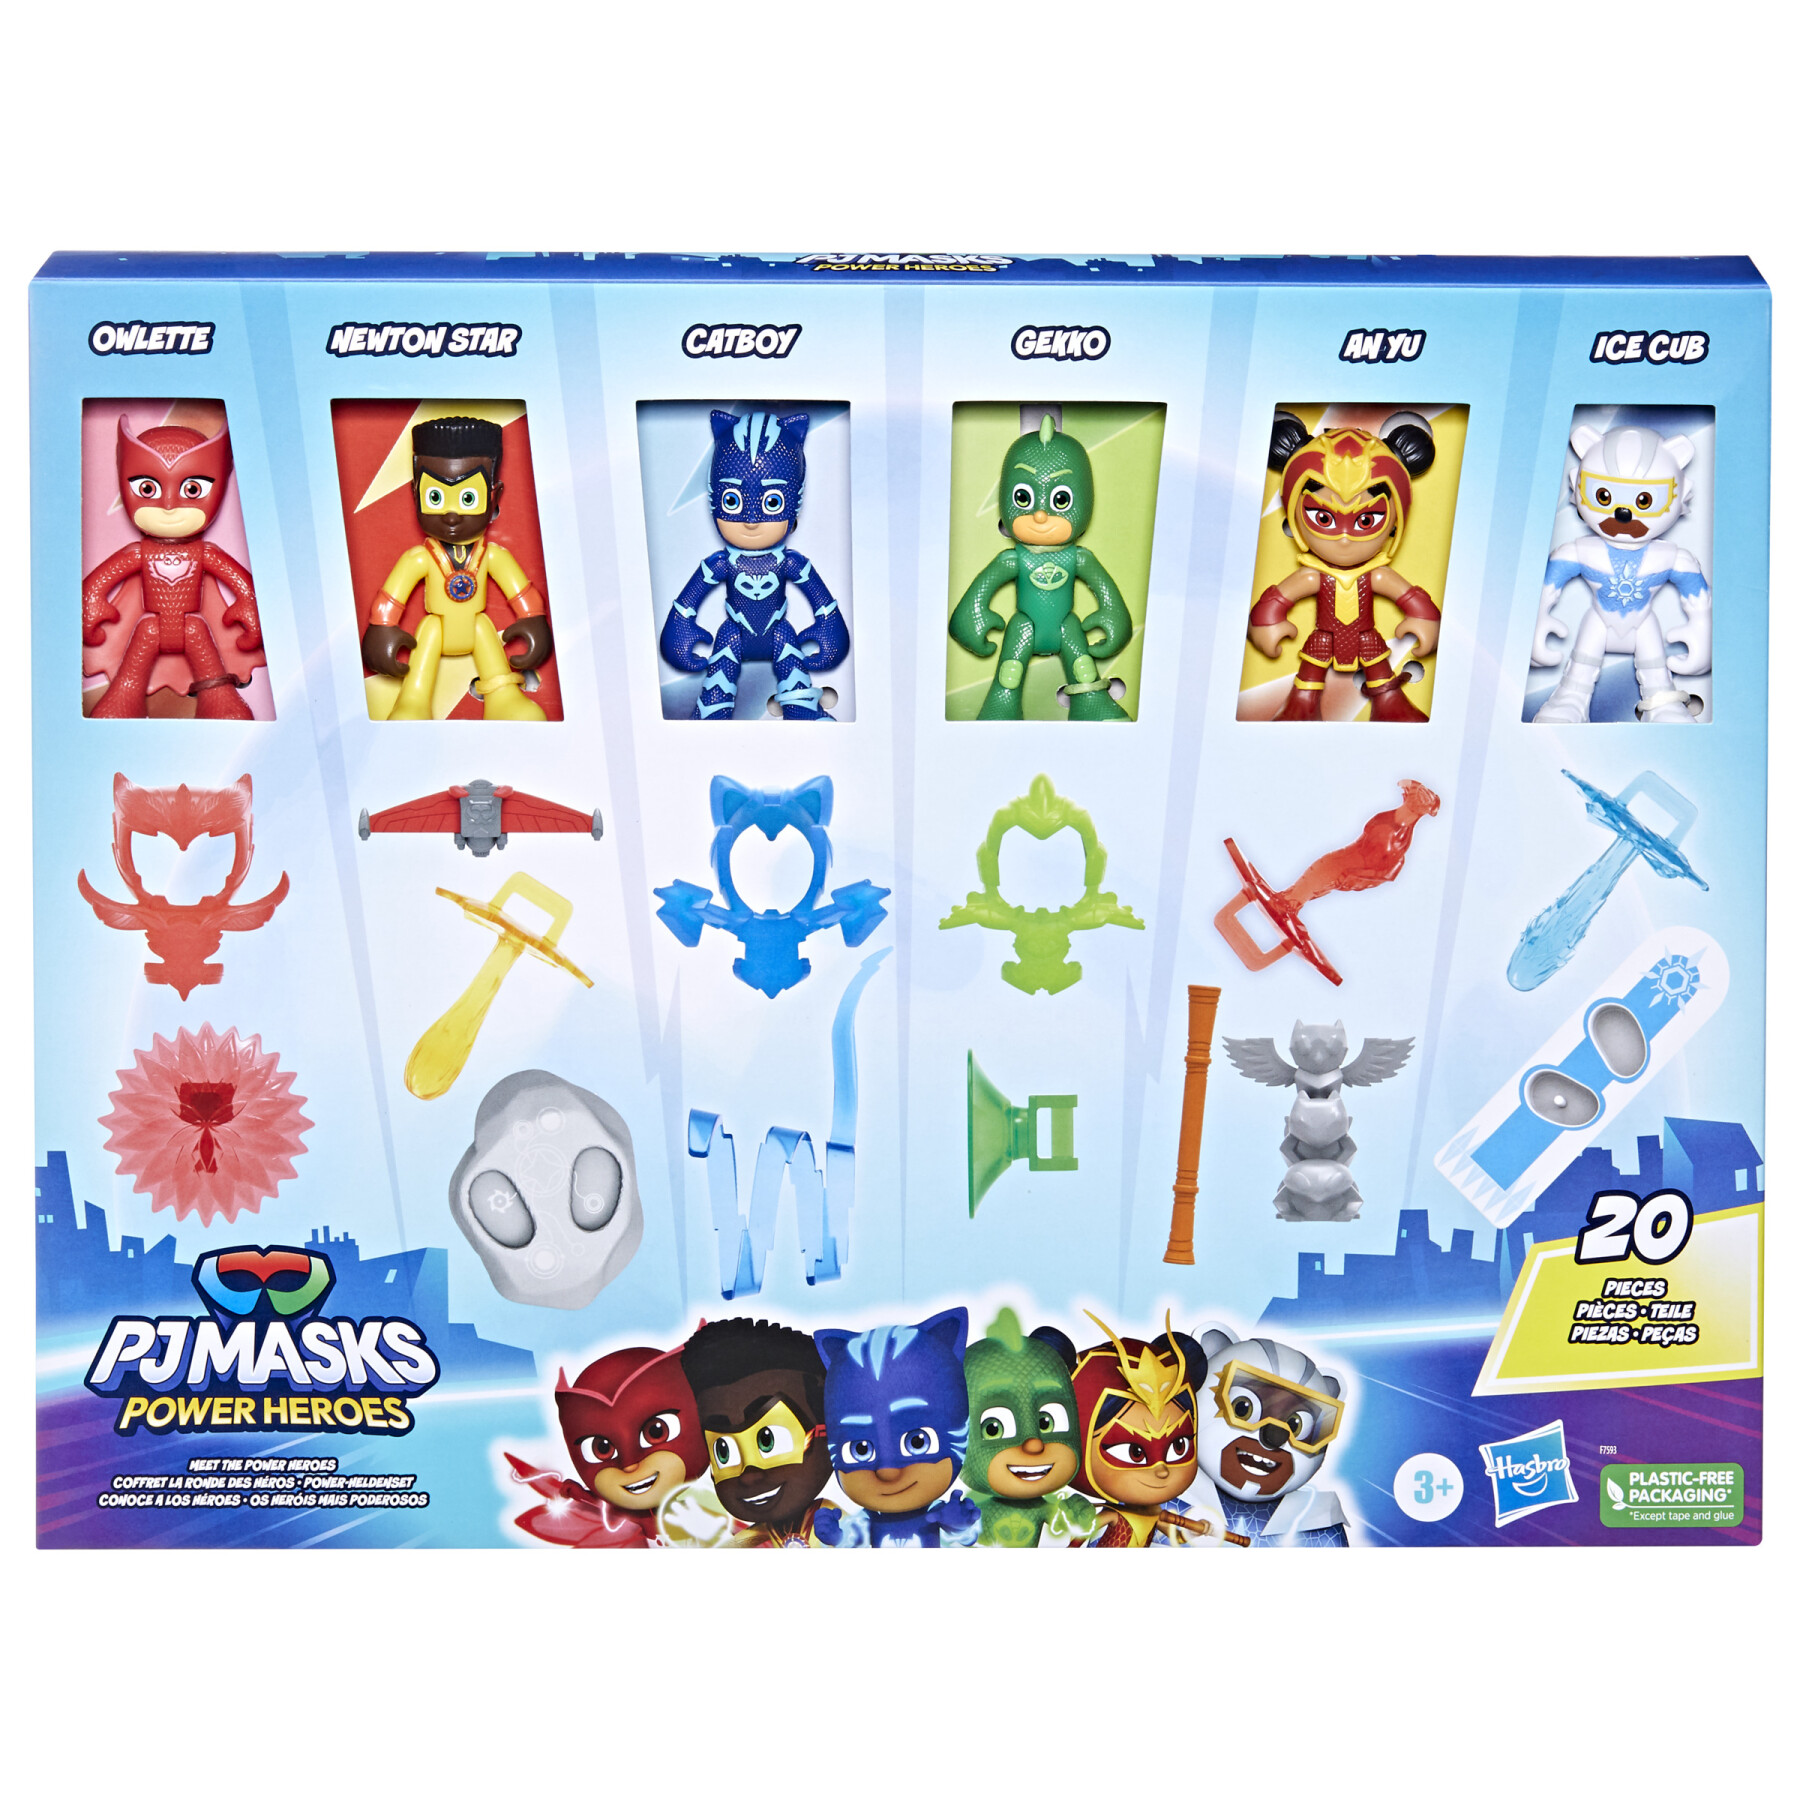 Pj masks - super pigiamini, la squadra di power heroes, action figure per bambini e bambine in età prescolare - PJ MASKS